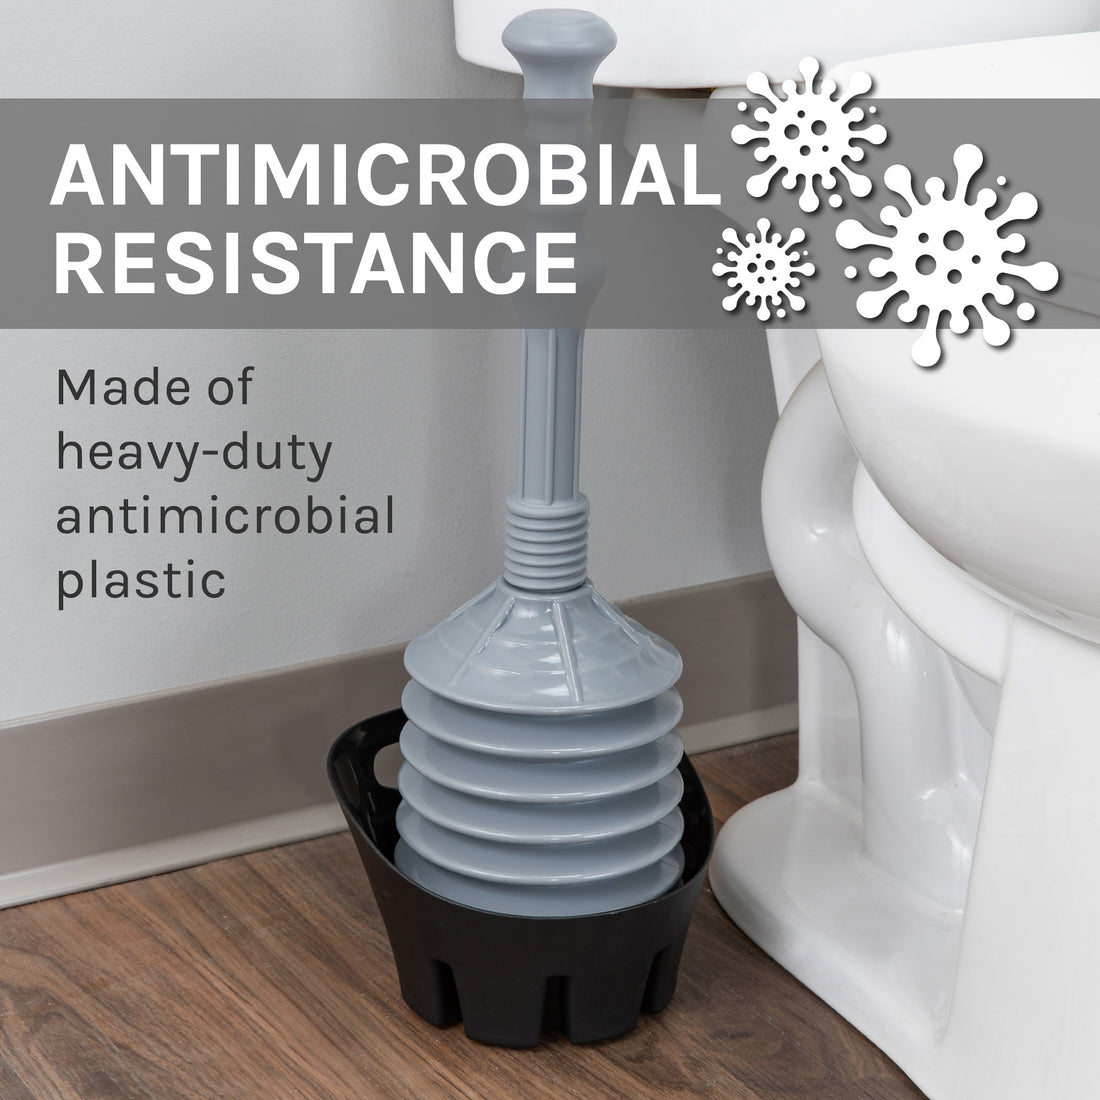 Antimicrobial Bellows Accordion Toilet Plunger with Black Storage Tray (Grey) - Utility sinks vanites Tehila